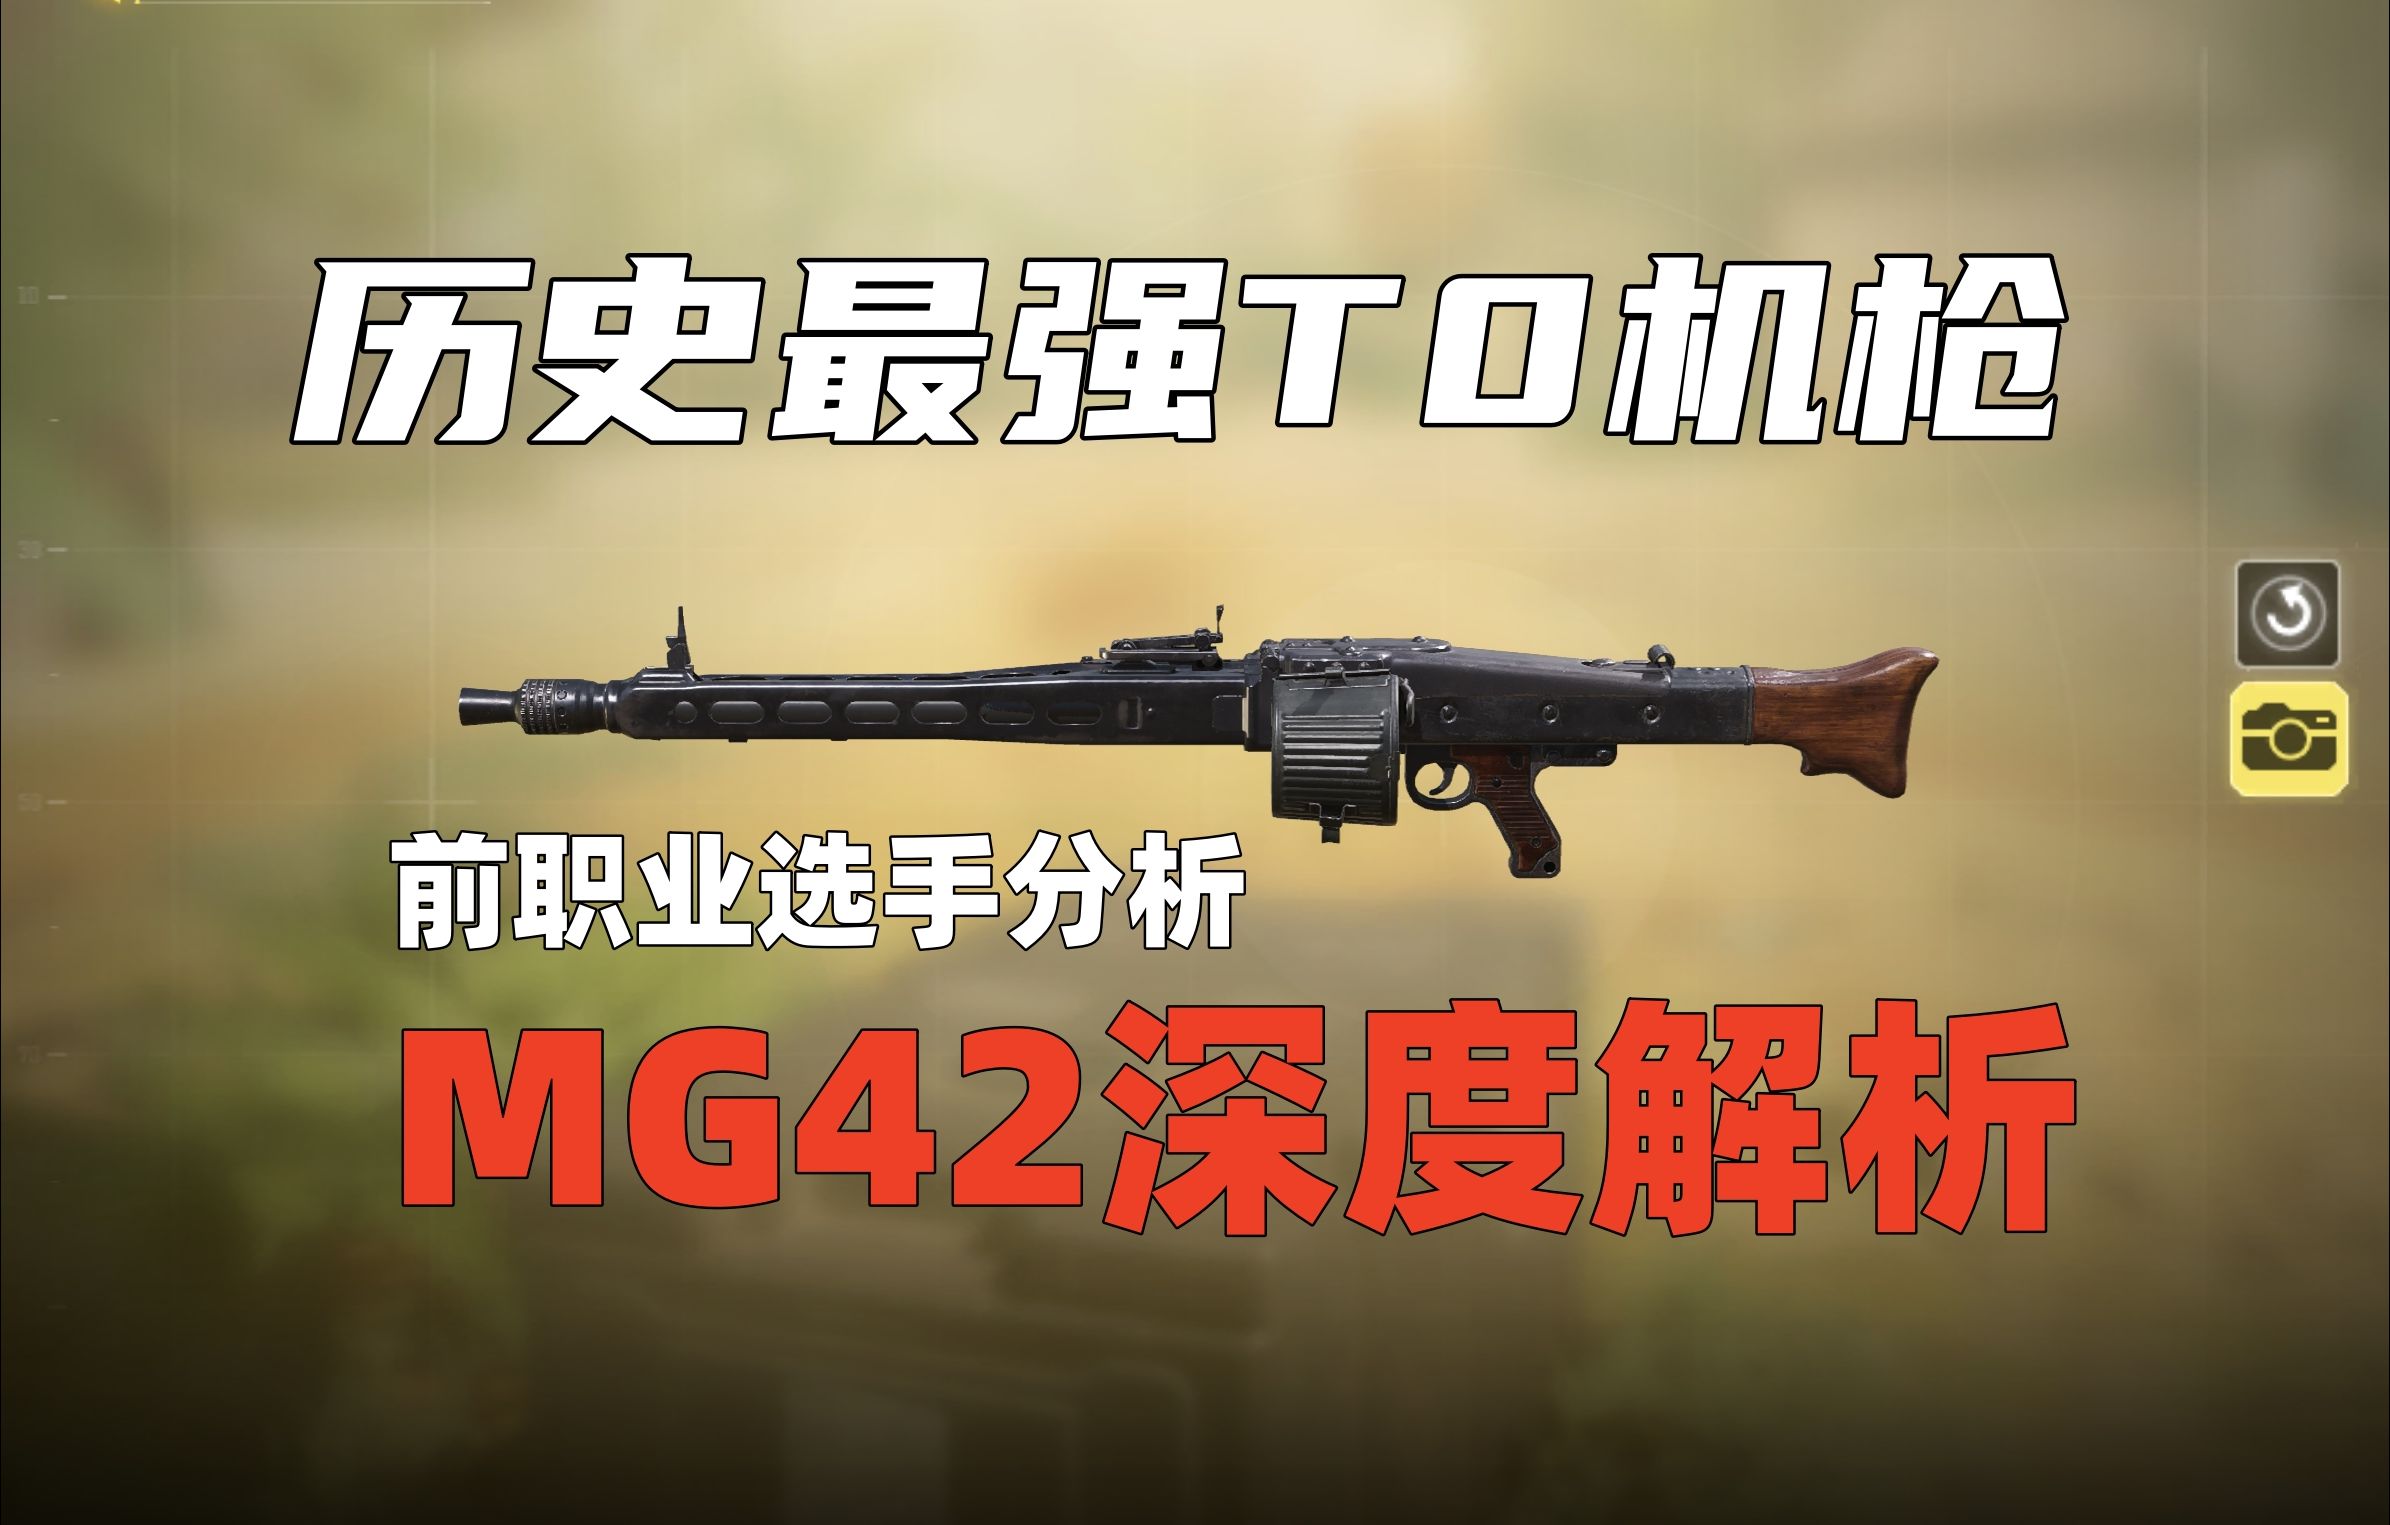 全网最详细MG42配装深度解析！CODM历年最强机枪？你想知道的都在这！职业选手最干货的配件分享教学。